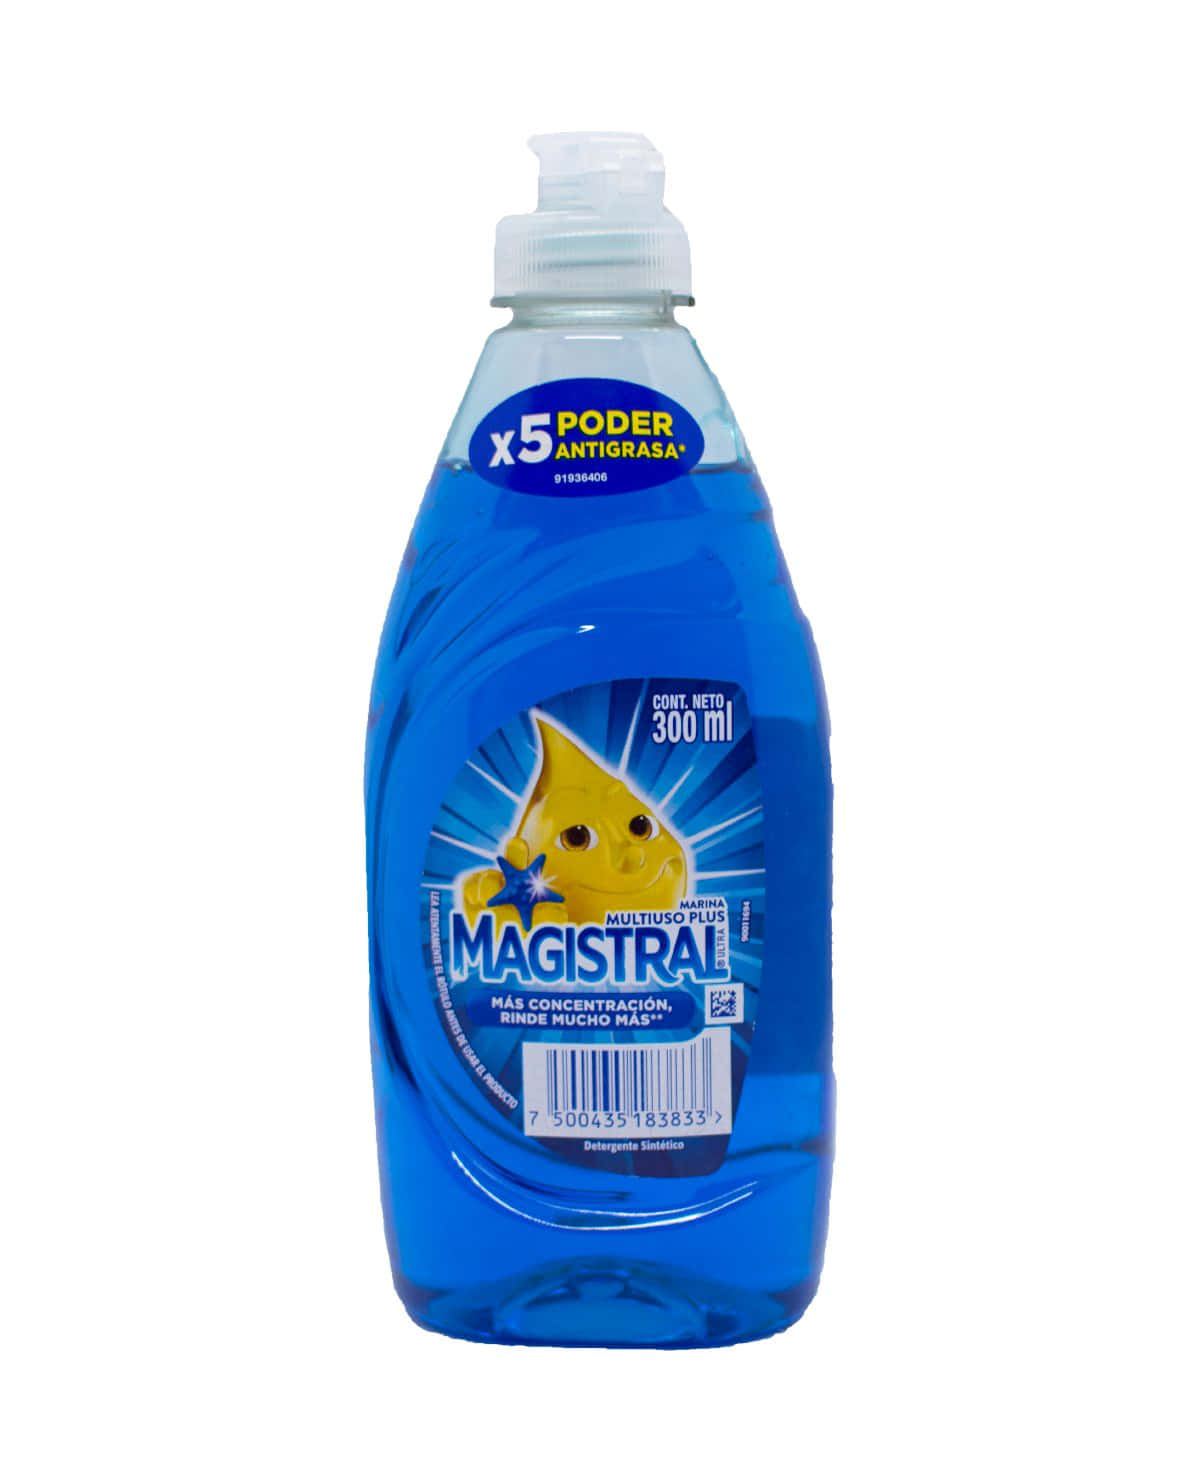 Detergente Magistral Multiuso Plus Marina 300 Ml